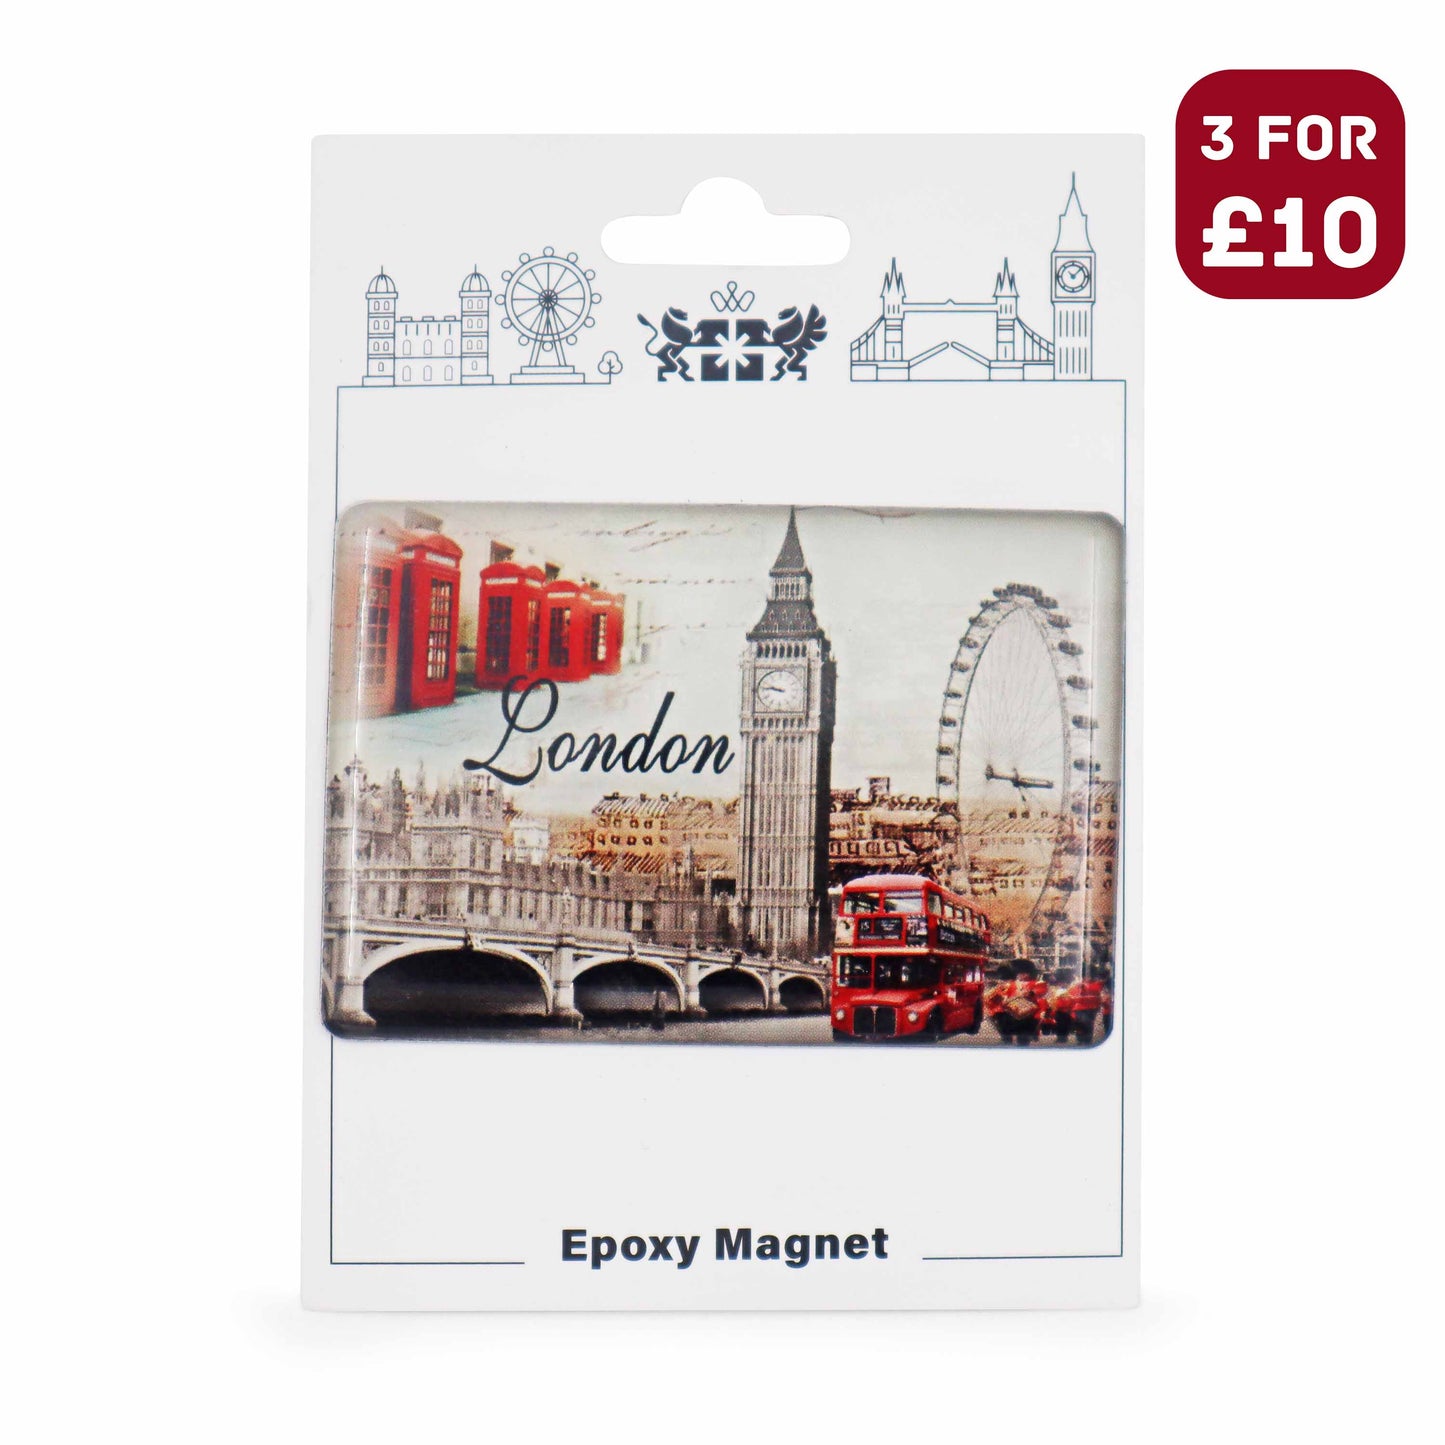 London Souvenir Epoxy Magnet - Design 1 - London Souvenir Gift